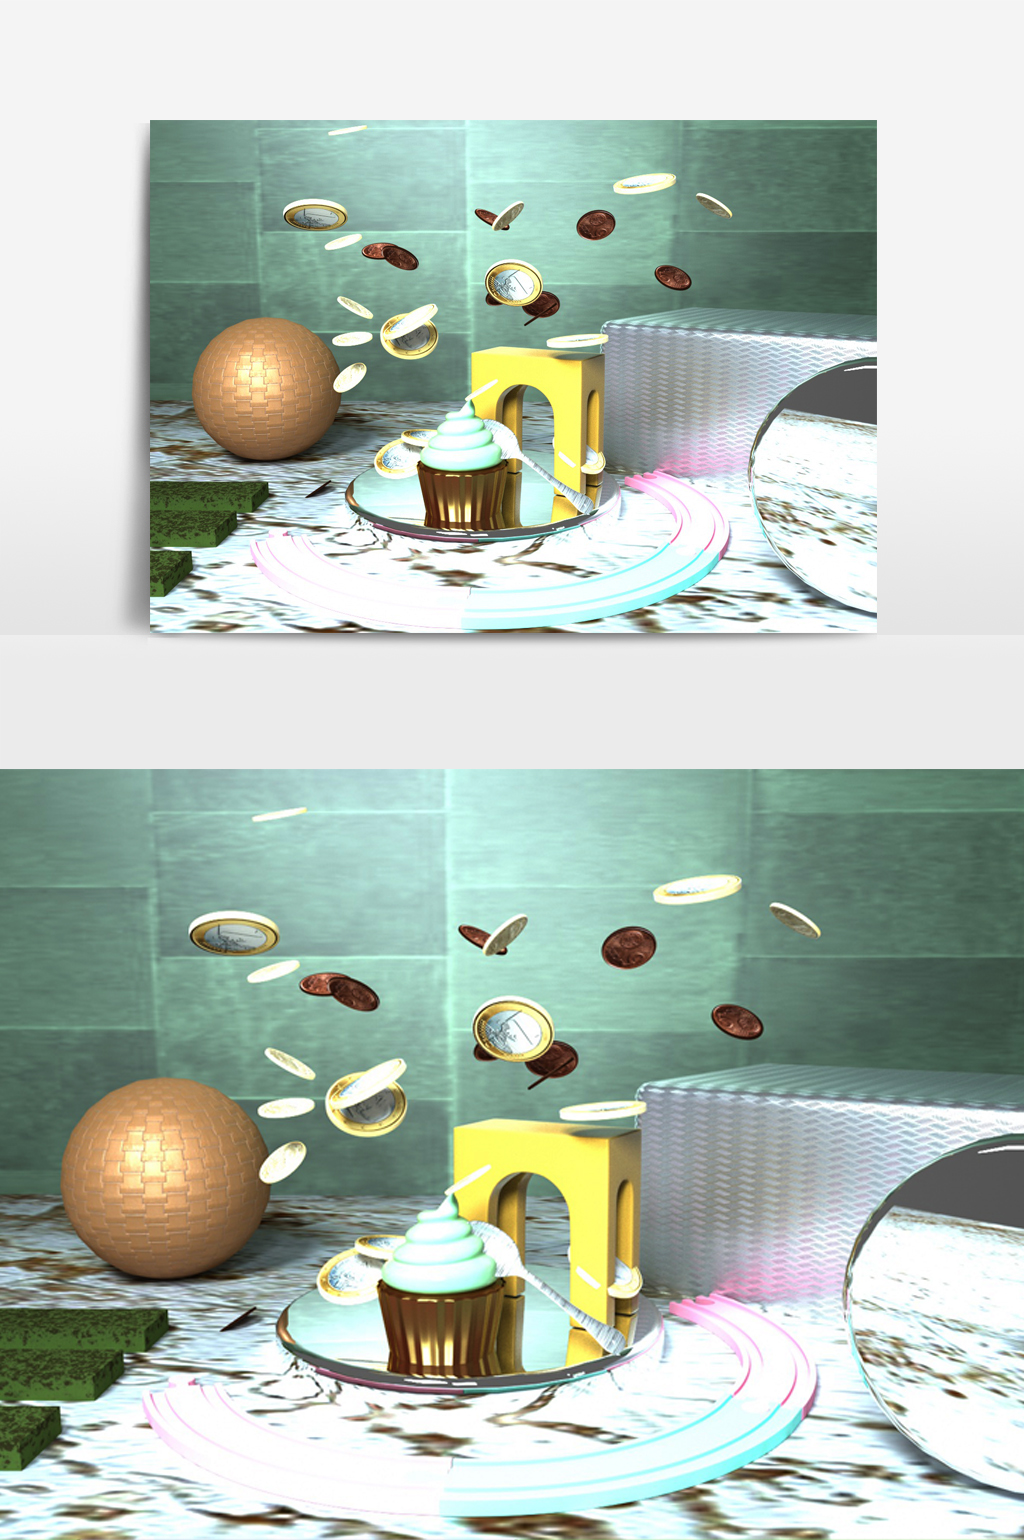 C4D模型悬浮几何创意甜品蛋糕场景036.jpg